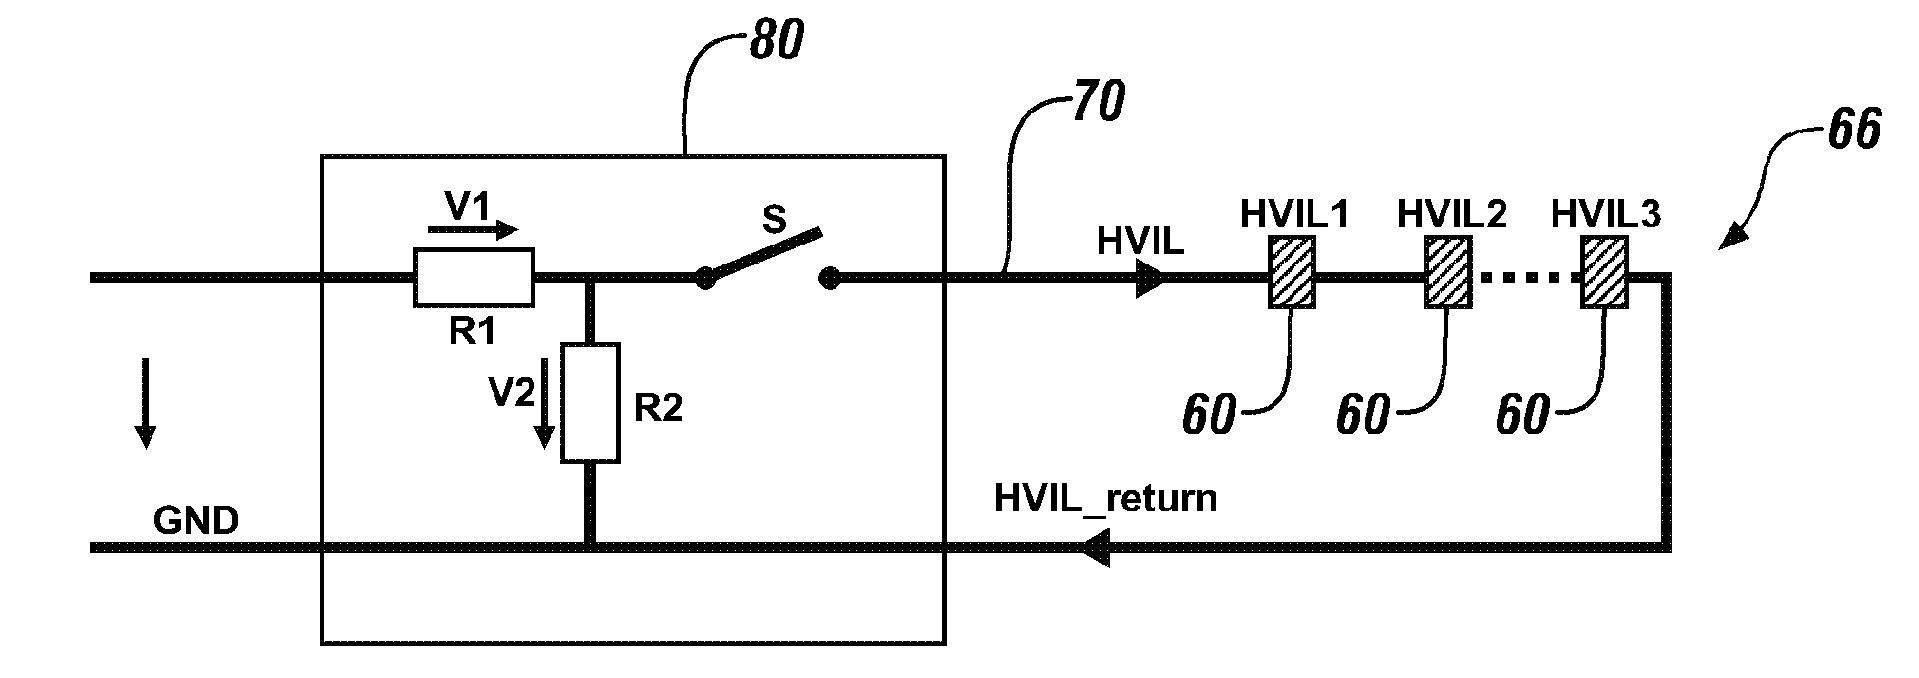 High-voltage interlock loop ("HVIL") switch having reed relay